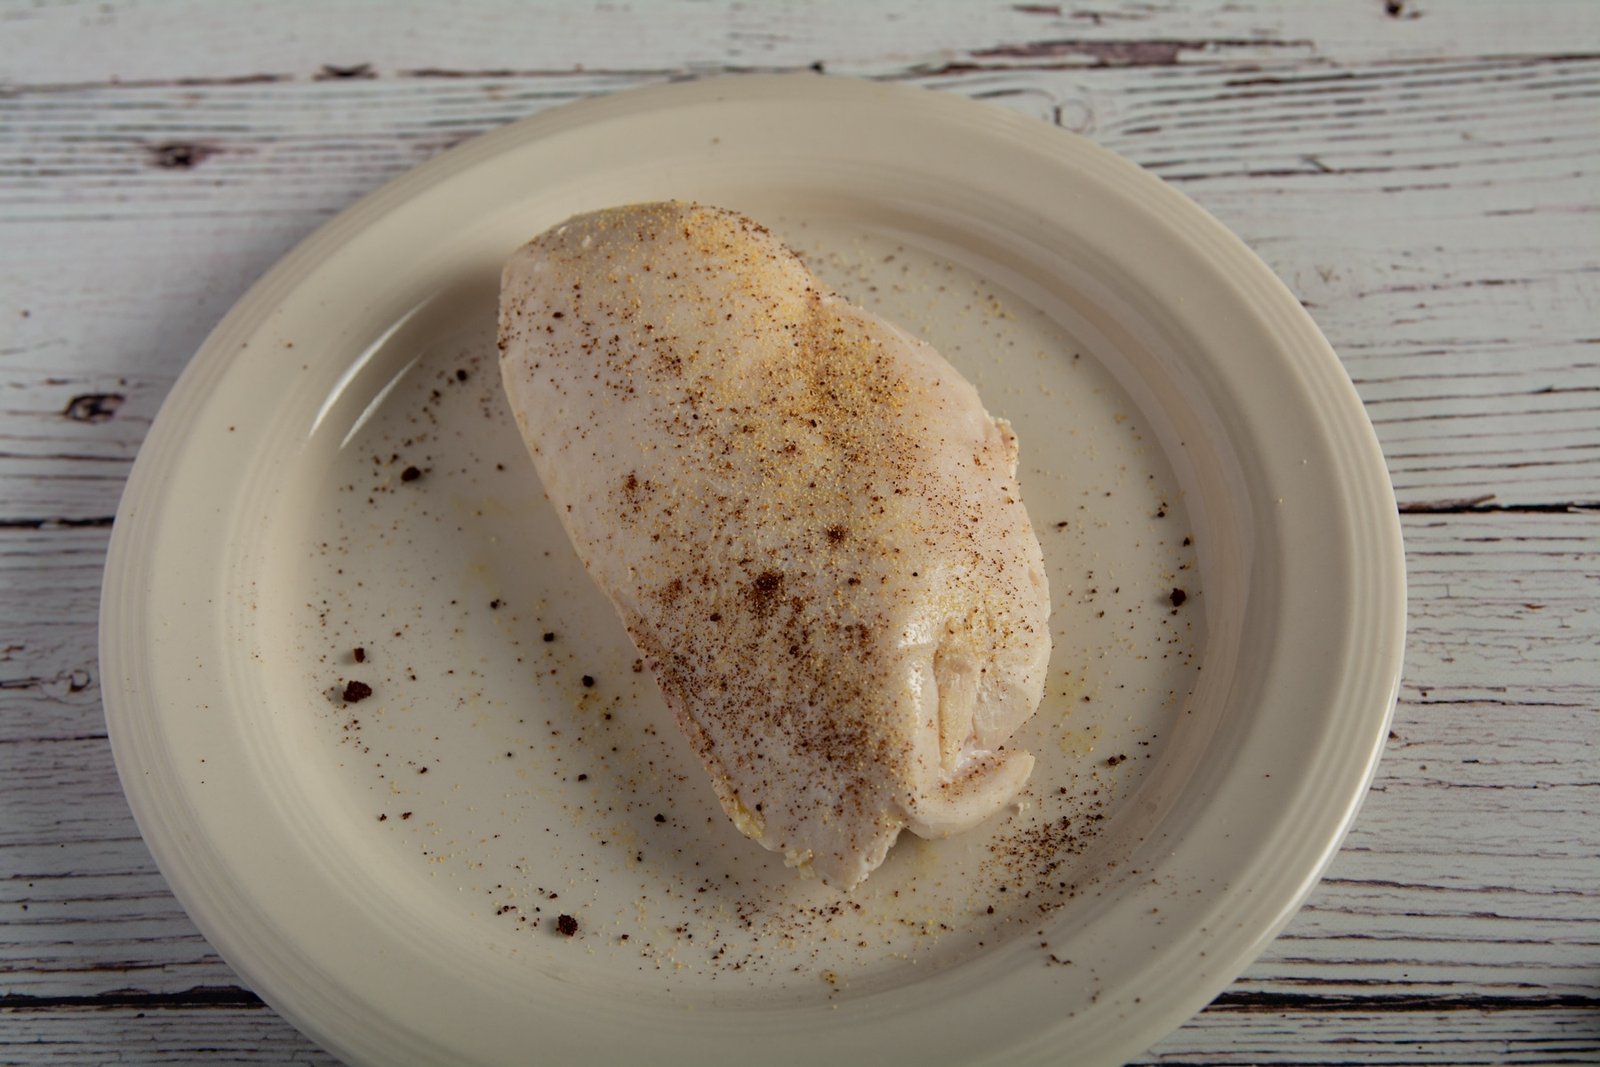 Seasoned chicken breast on a plate